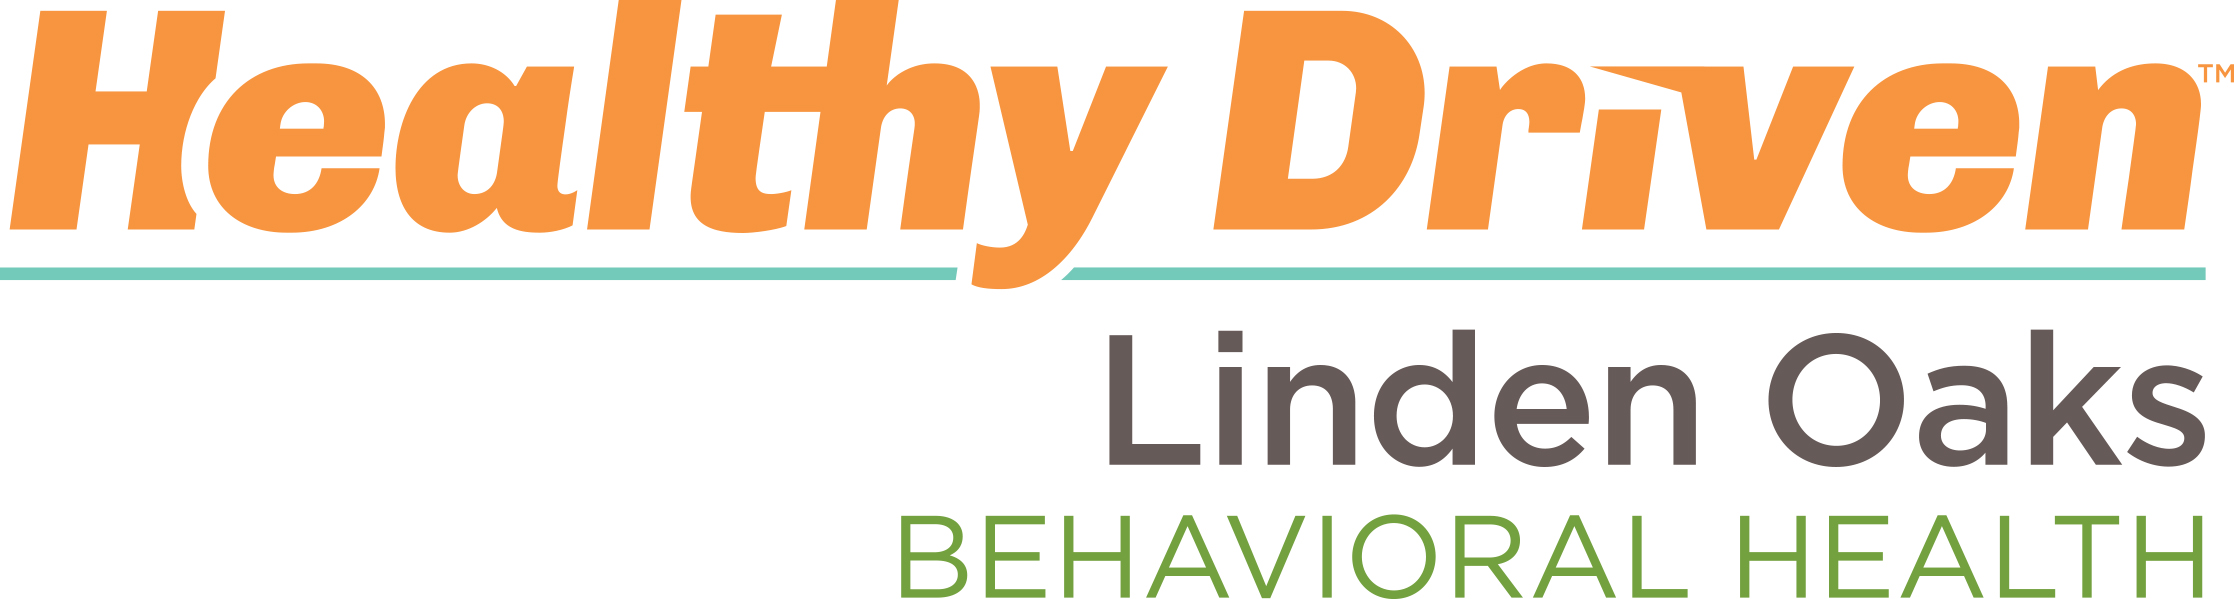 Linden Oaks Behavioral Health logo